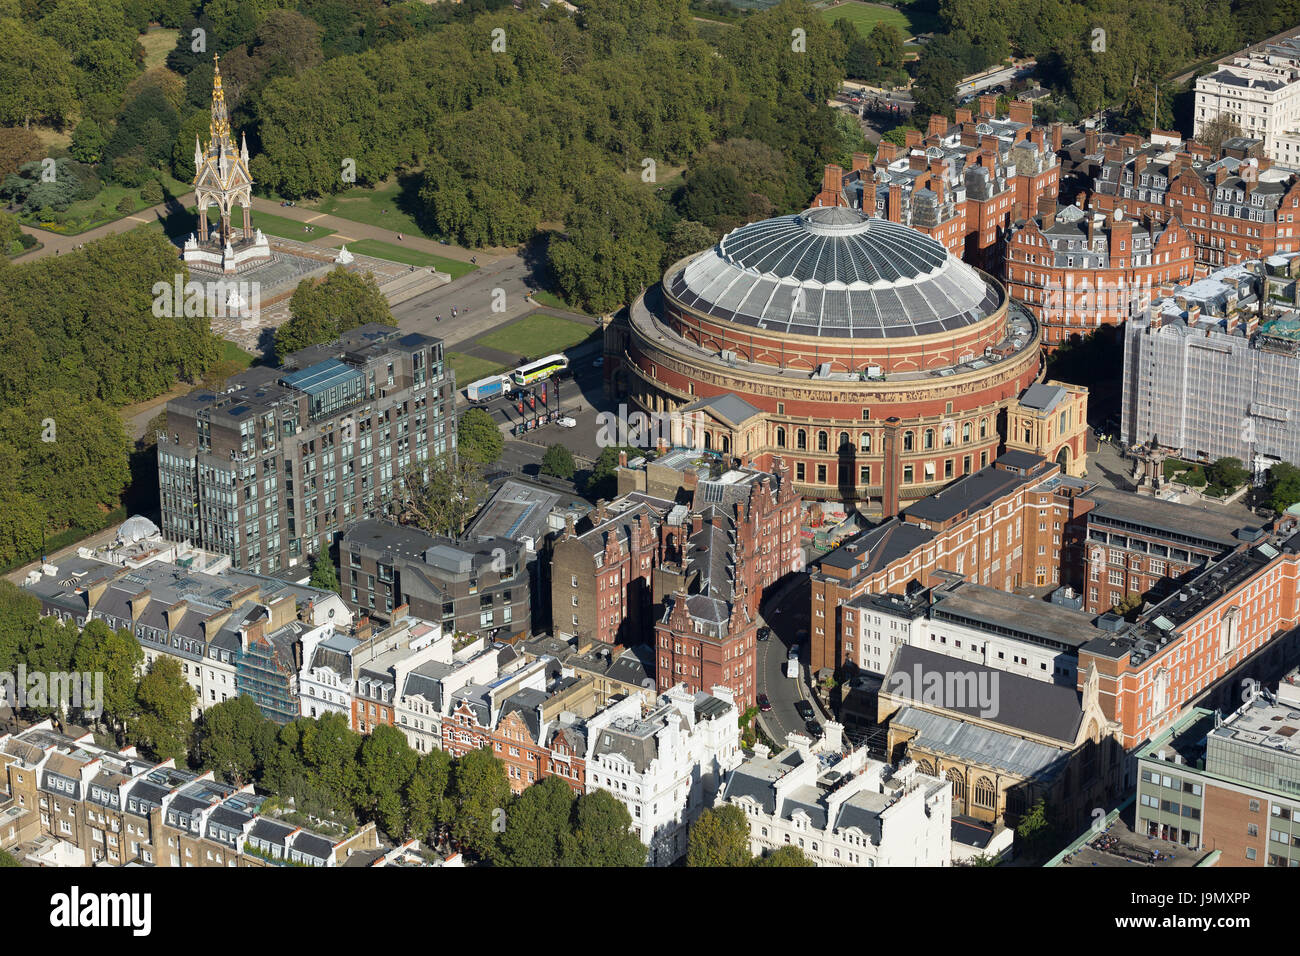 Vue aérienne du Royal Albert Hall et Albert Memorial, Kensington Gore, les jardins de Kensington, Londres. La salle de concert a ouvert ses portes en 1871 Banque D'Images